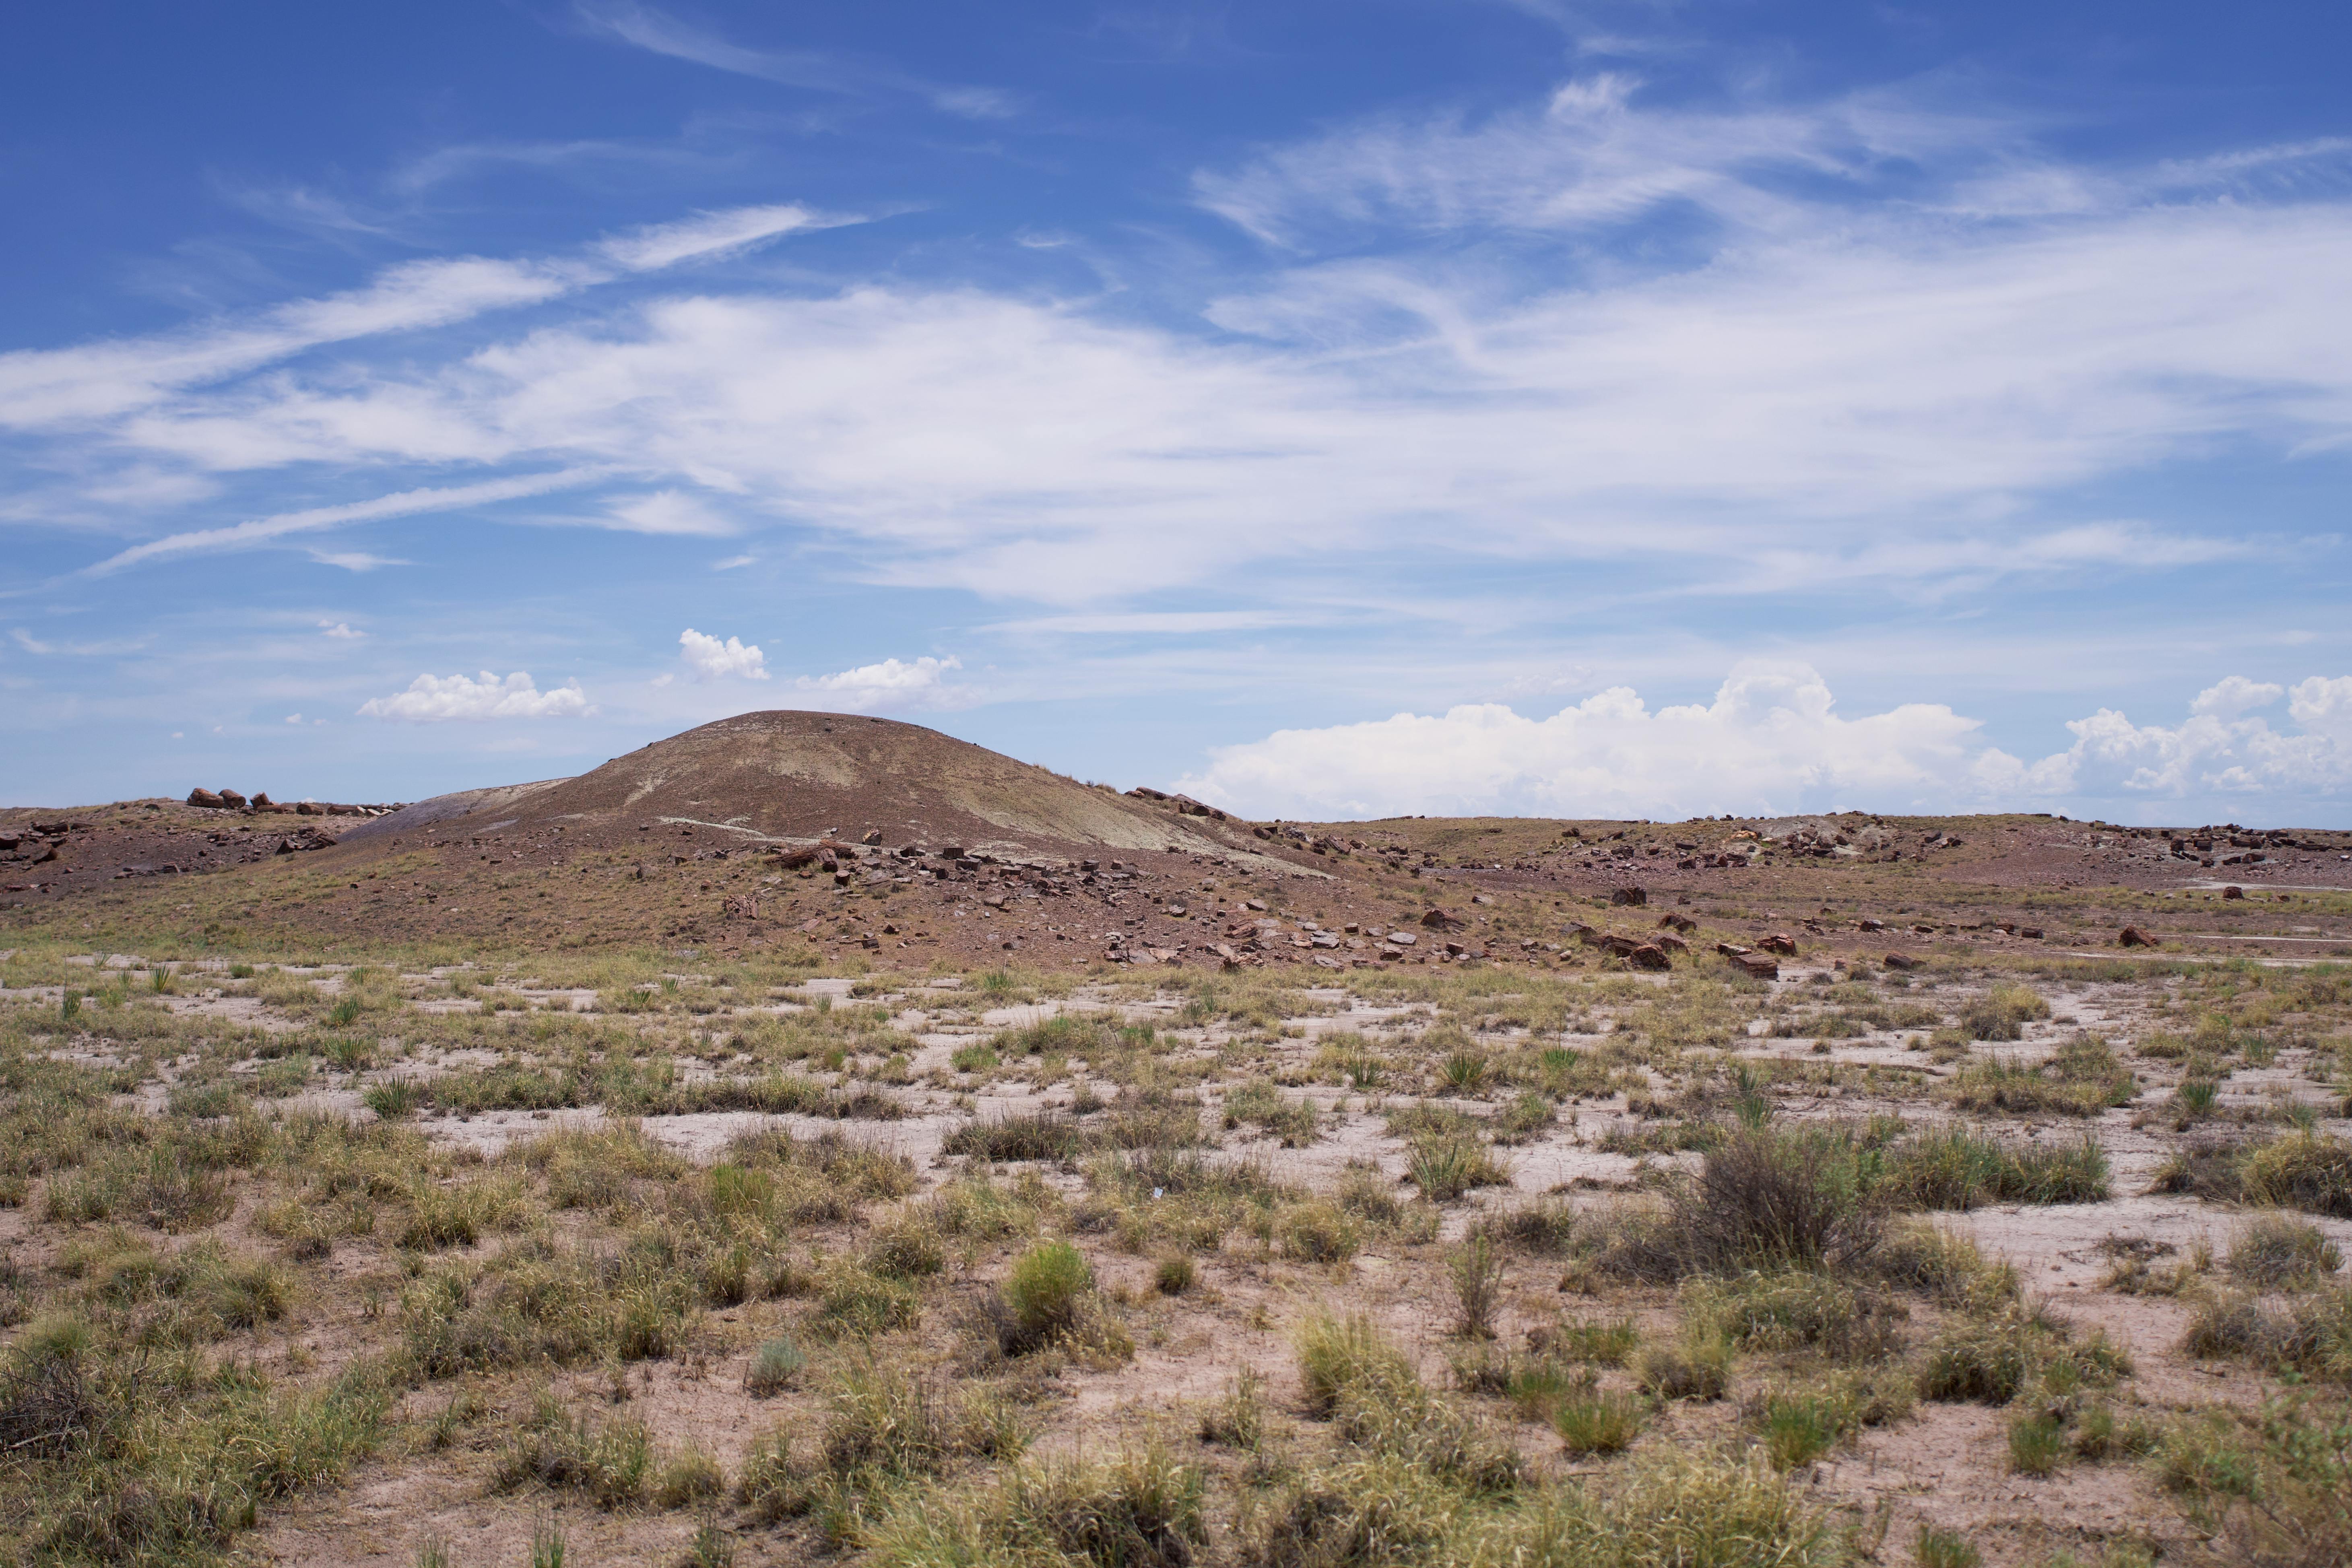 painted desert in arizona usa